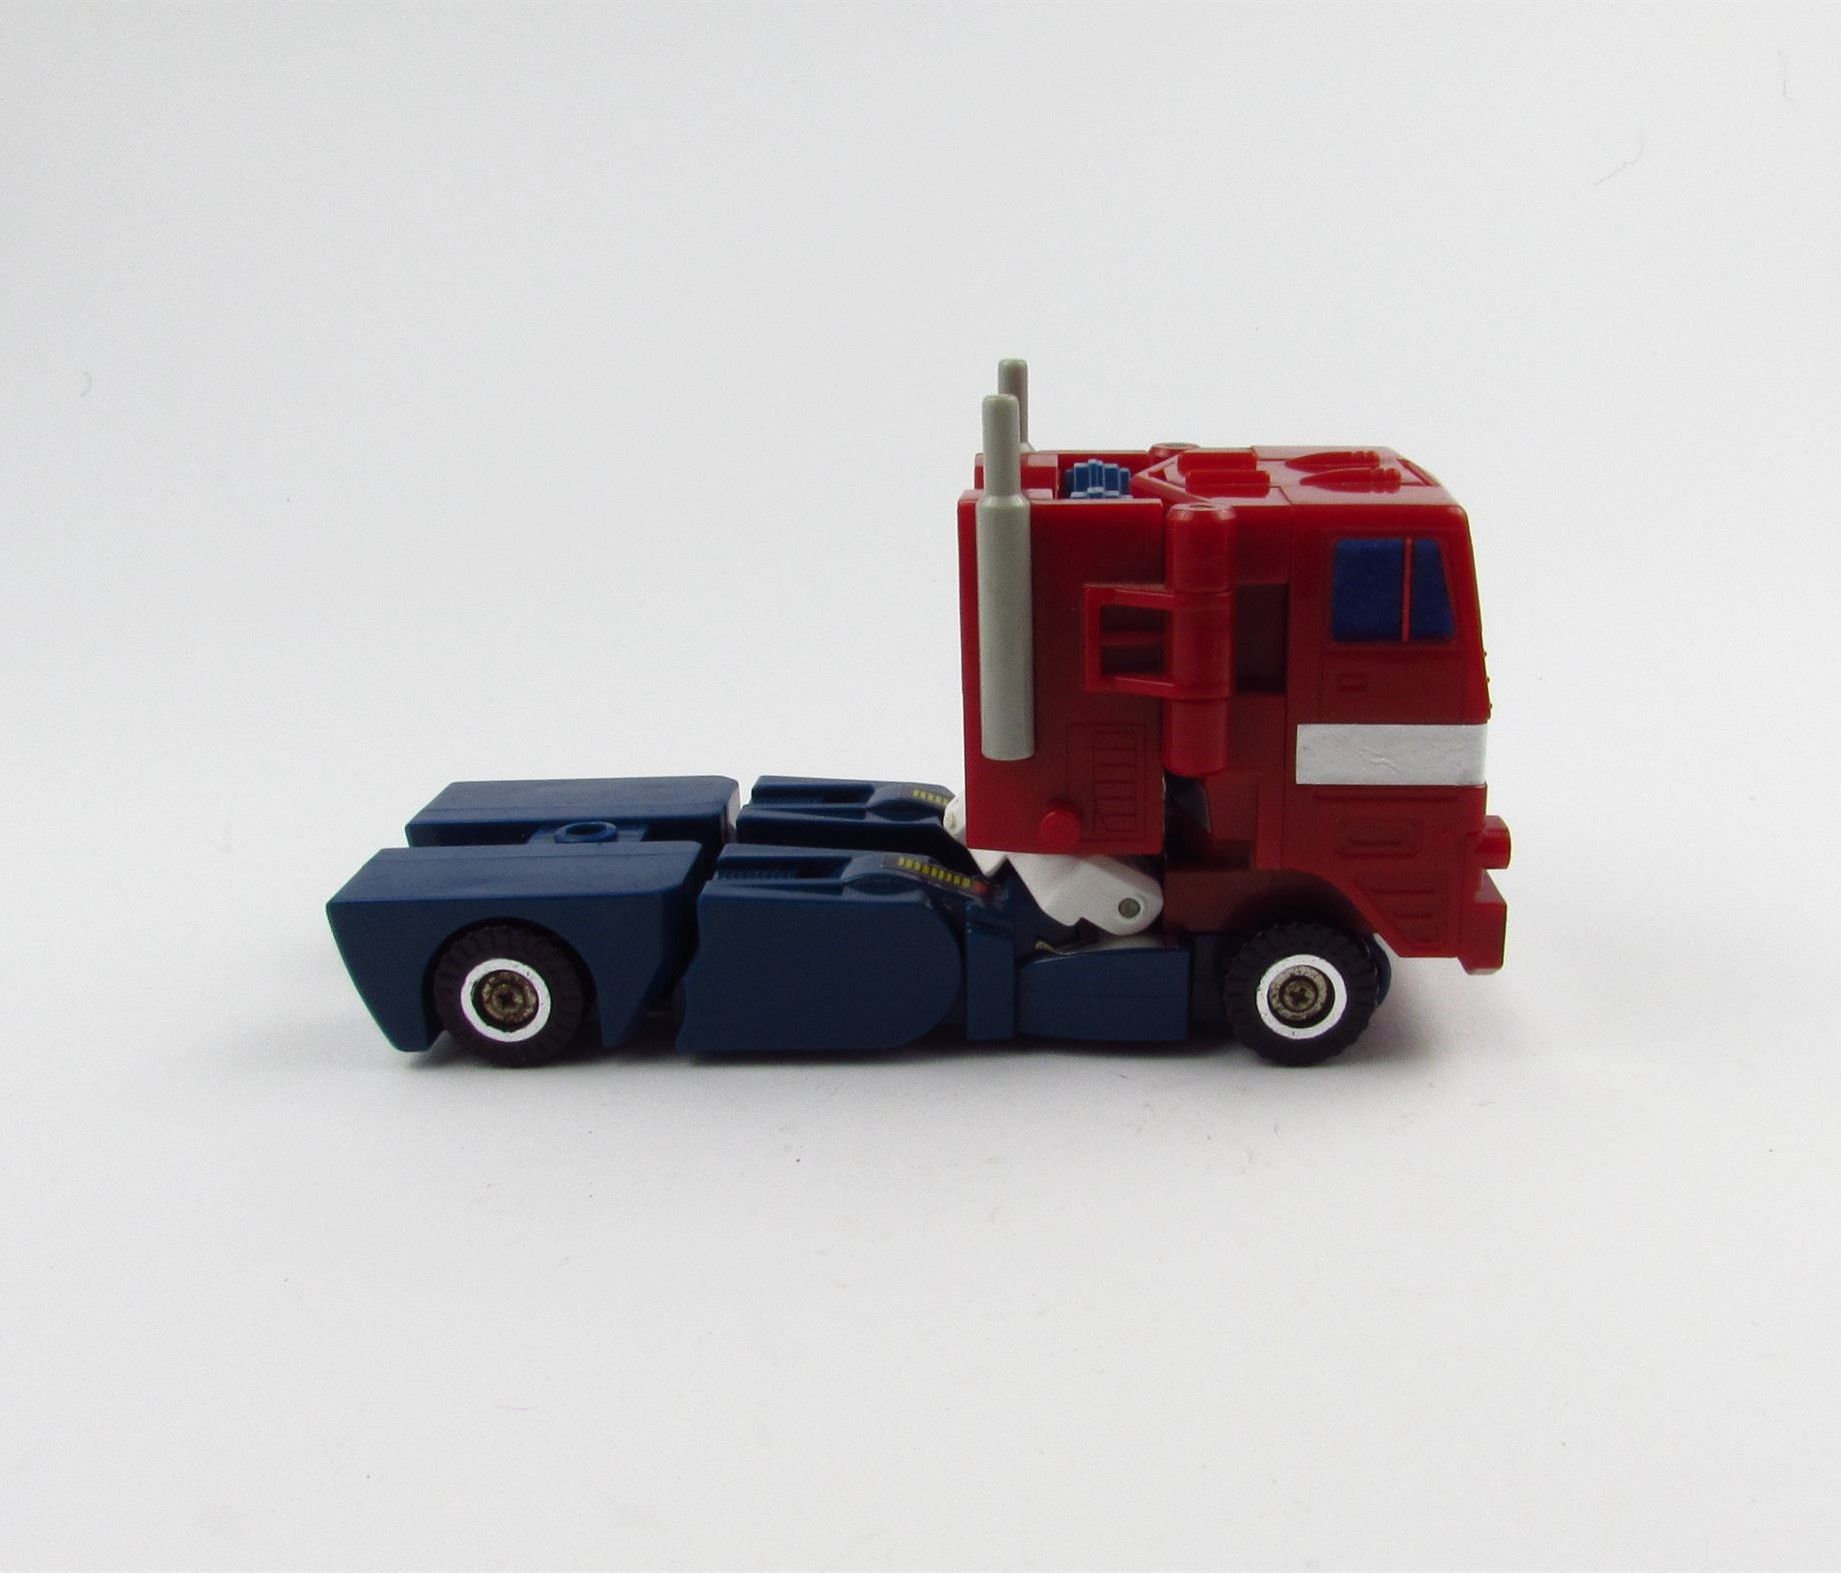 HASBRO - Transformers G1 Optimus Prime 1988 r. Figurka kolekcjonerska